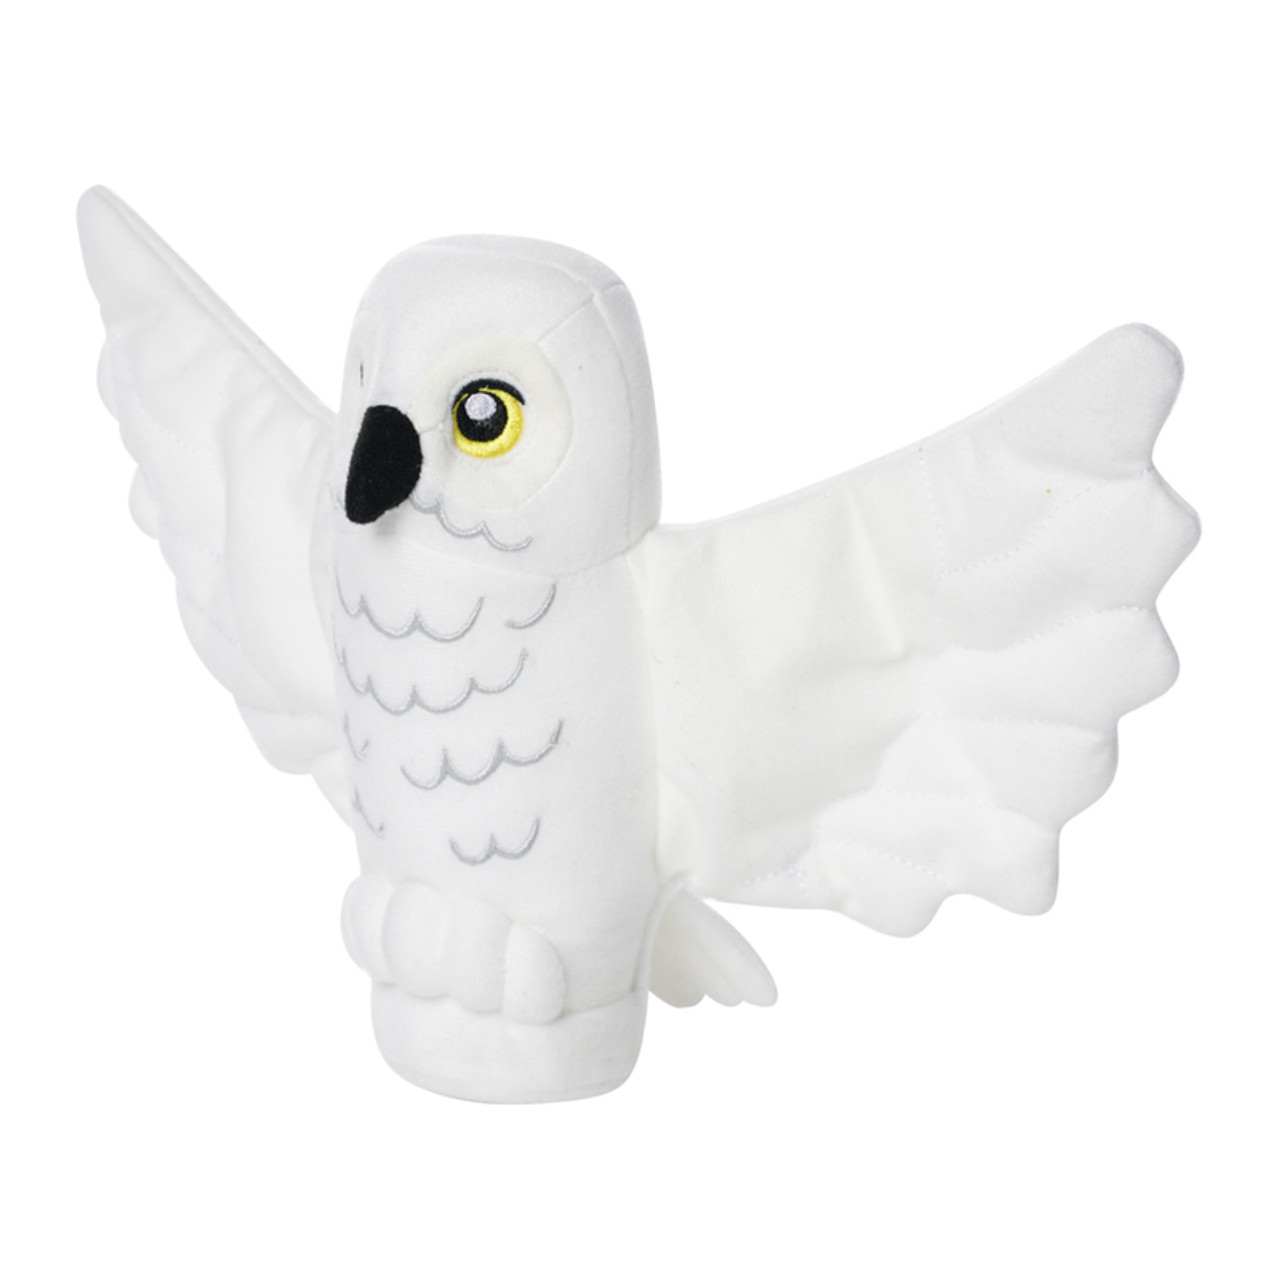 Lego Hedwig the Owl Plush,  31cm EAN 514496